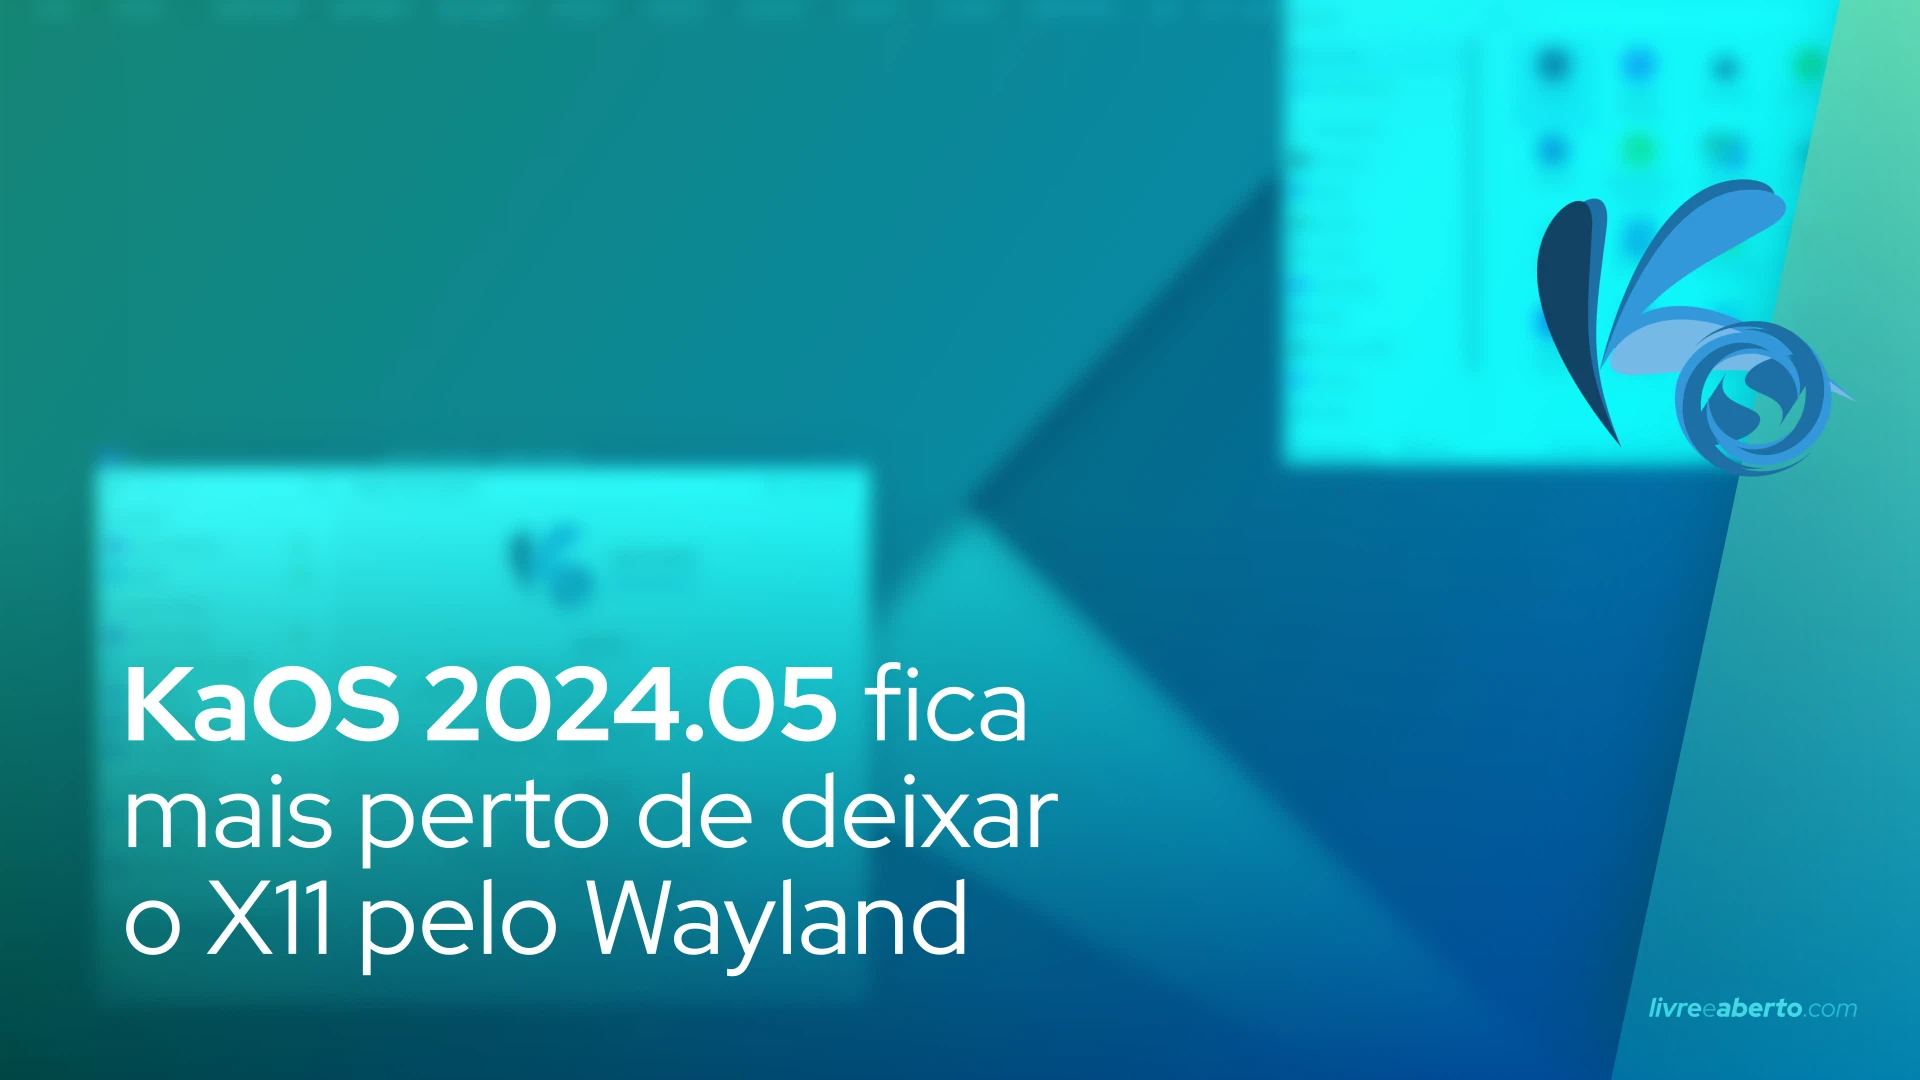 KaOS 2024.05 fica mais perto de deixar o X11 pelo Wayland